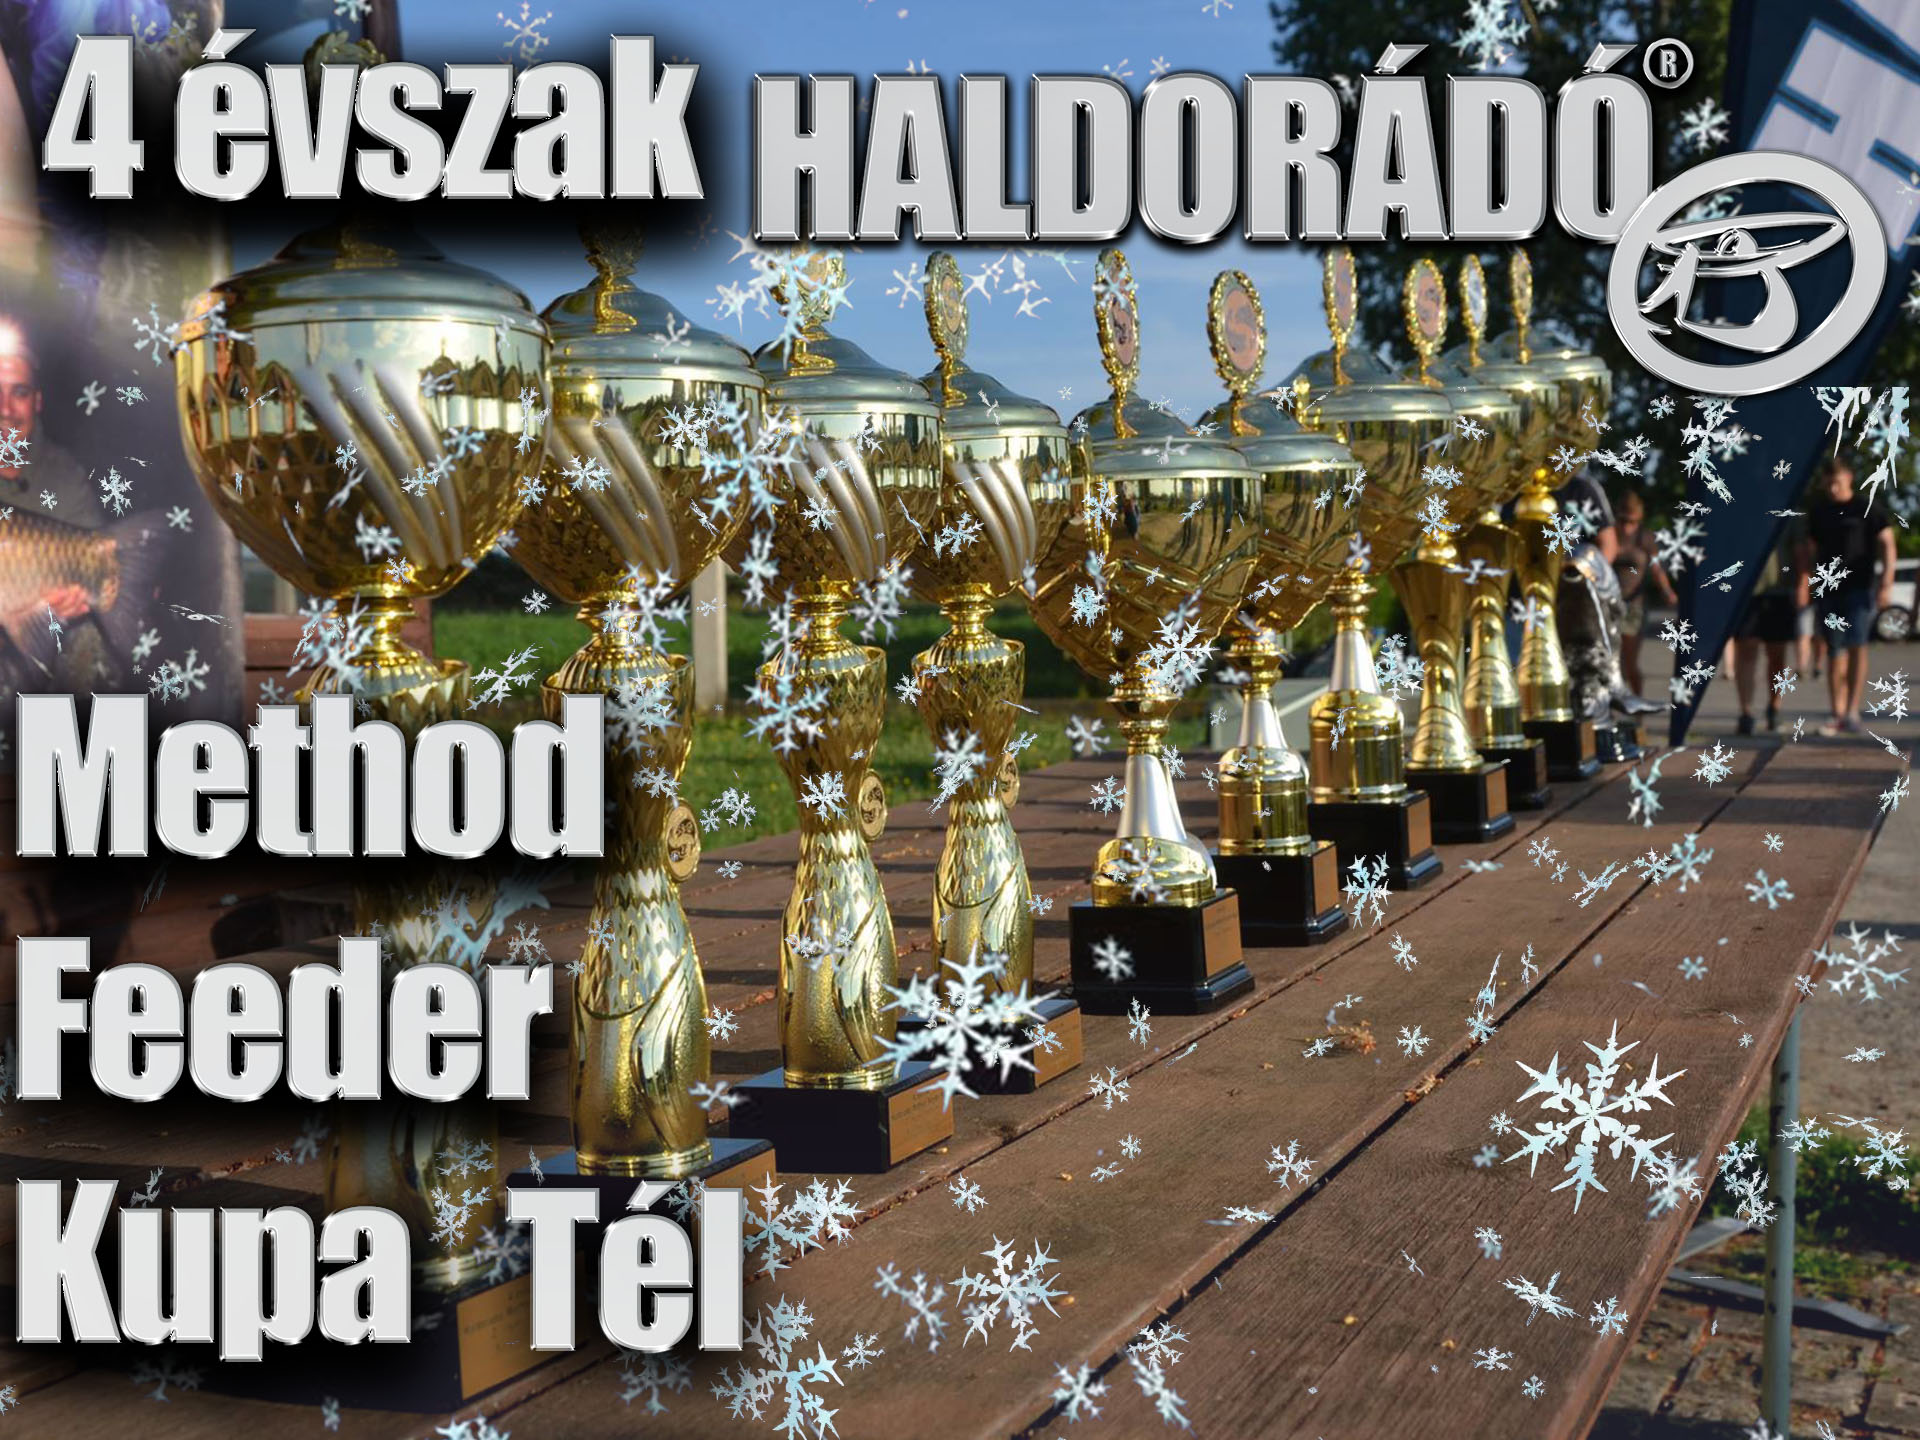 4 évszak Haldorádó Method Feeder Kupa – 4. téli, záró forduló versenykiírás